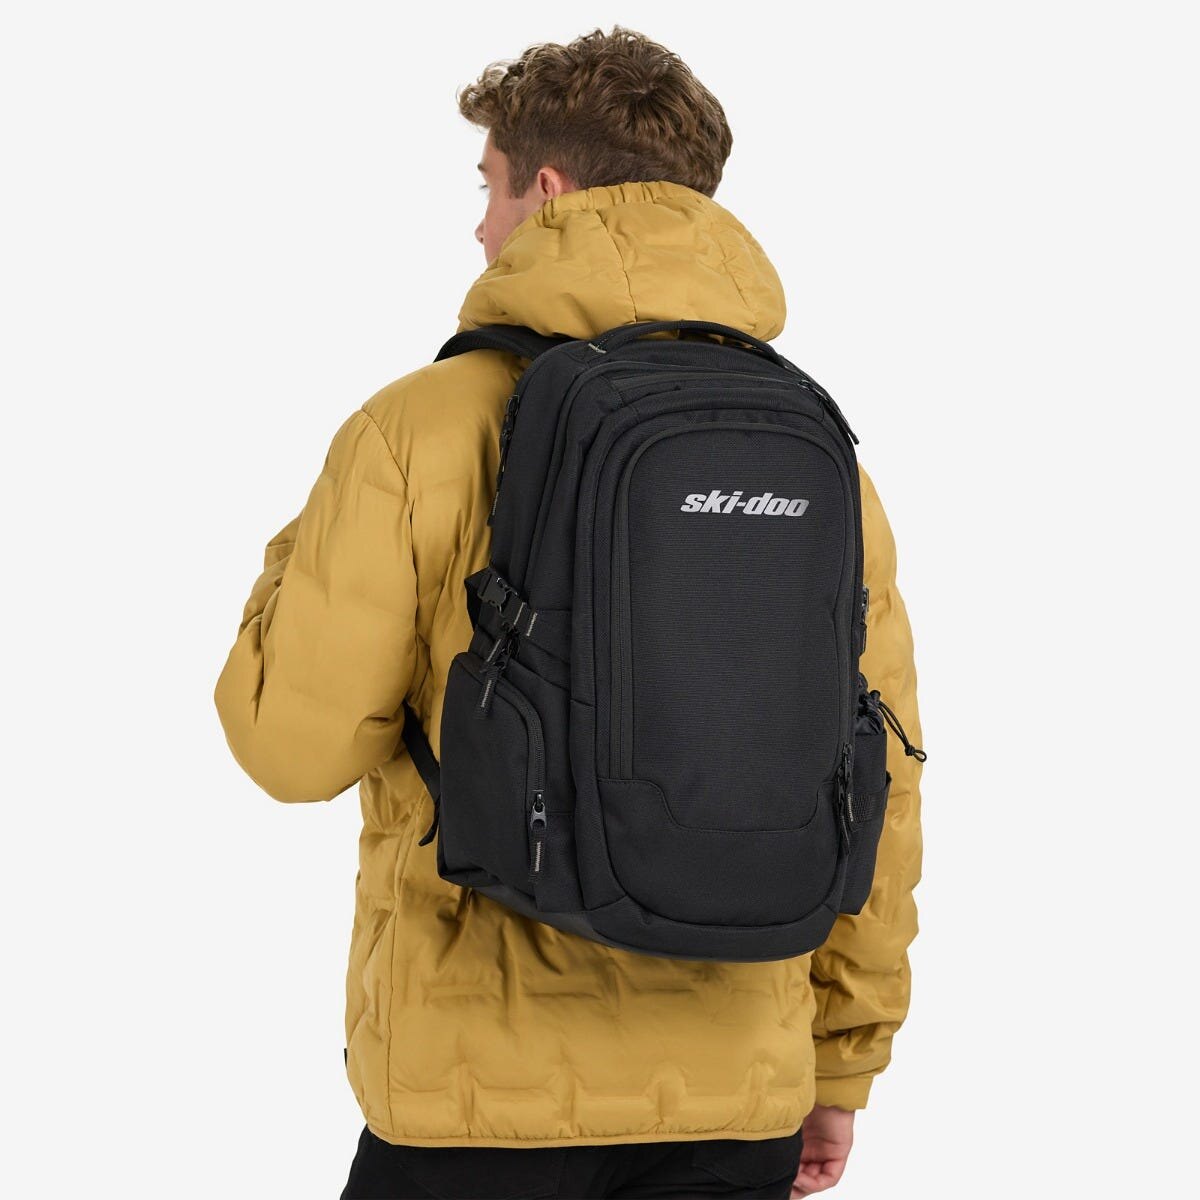 Ski Doo Laptop Backpack Onesize Black